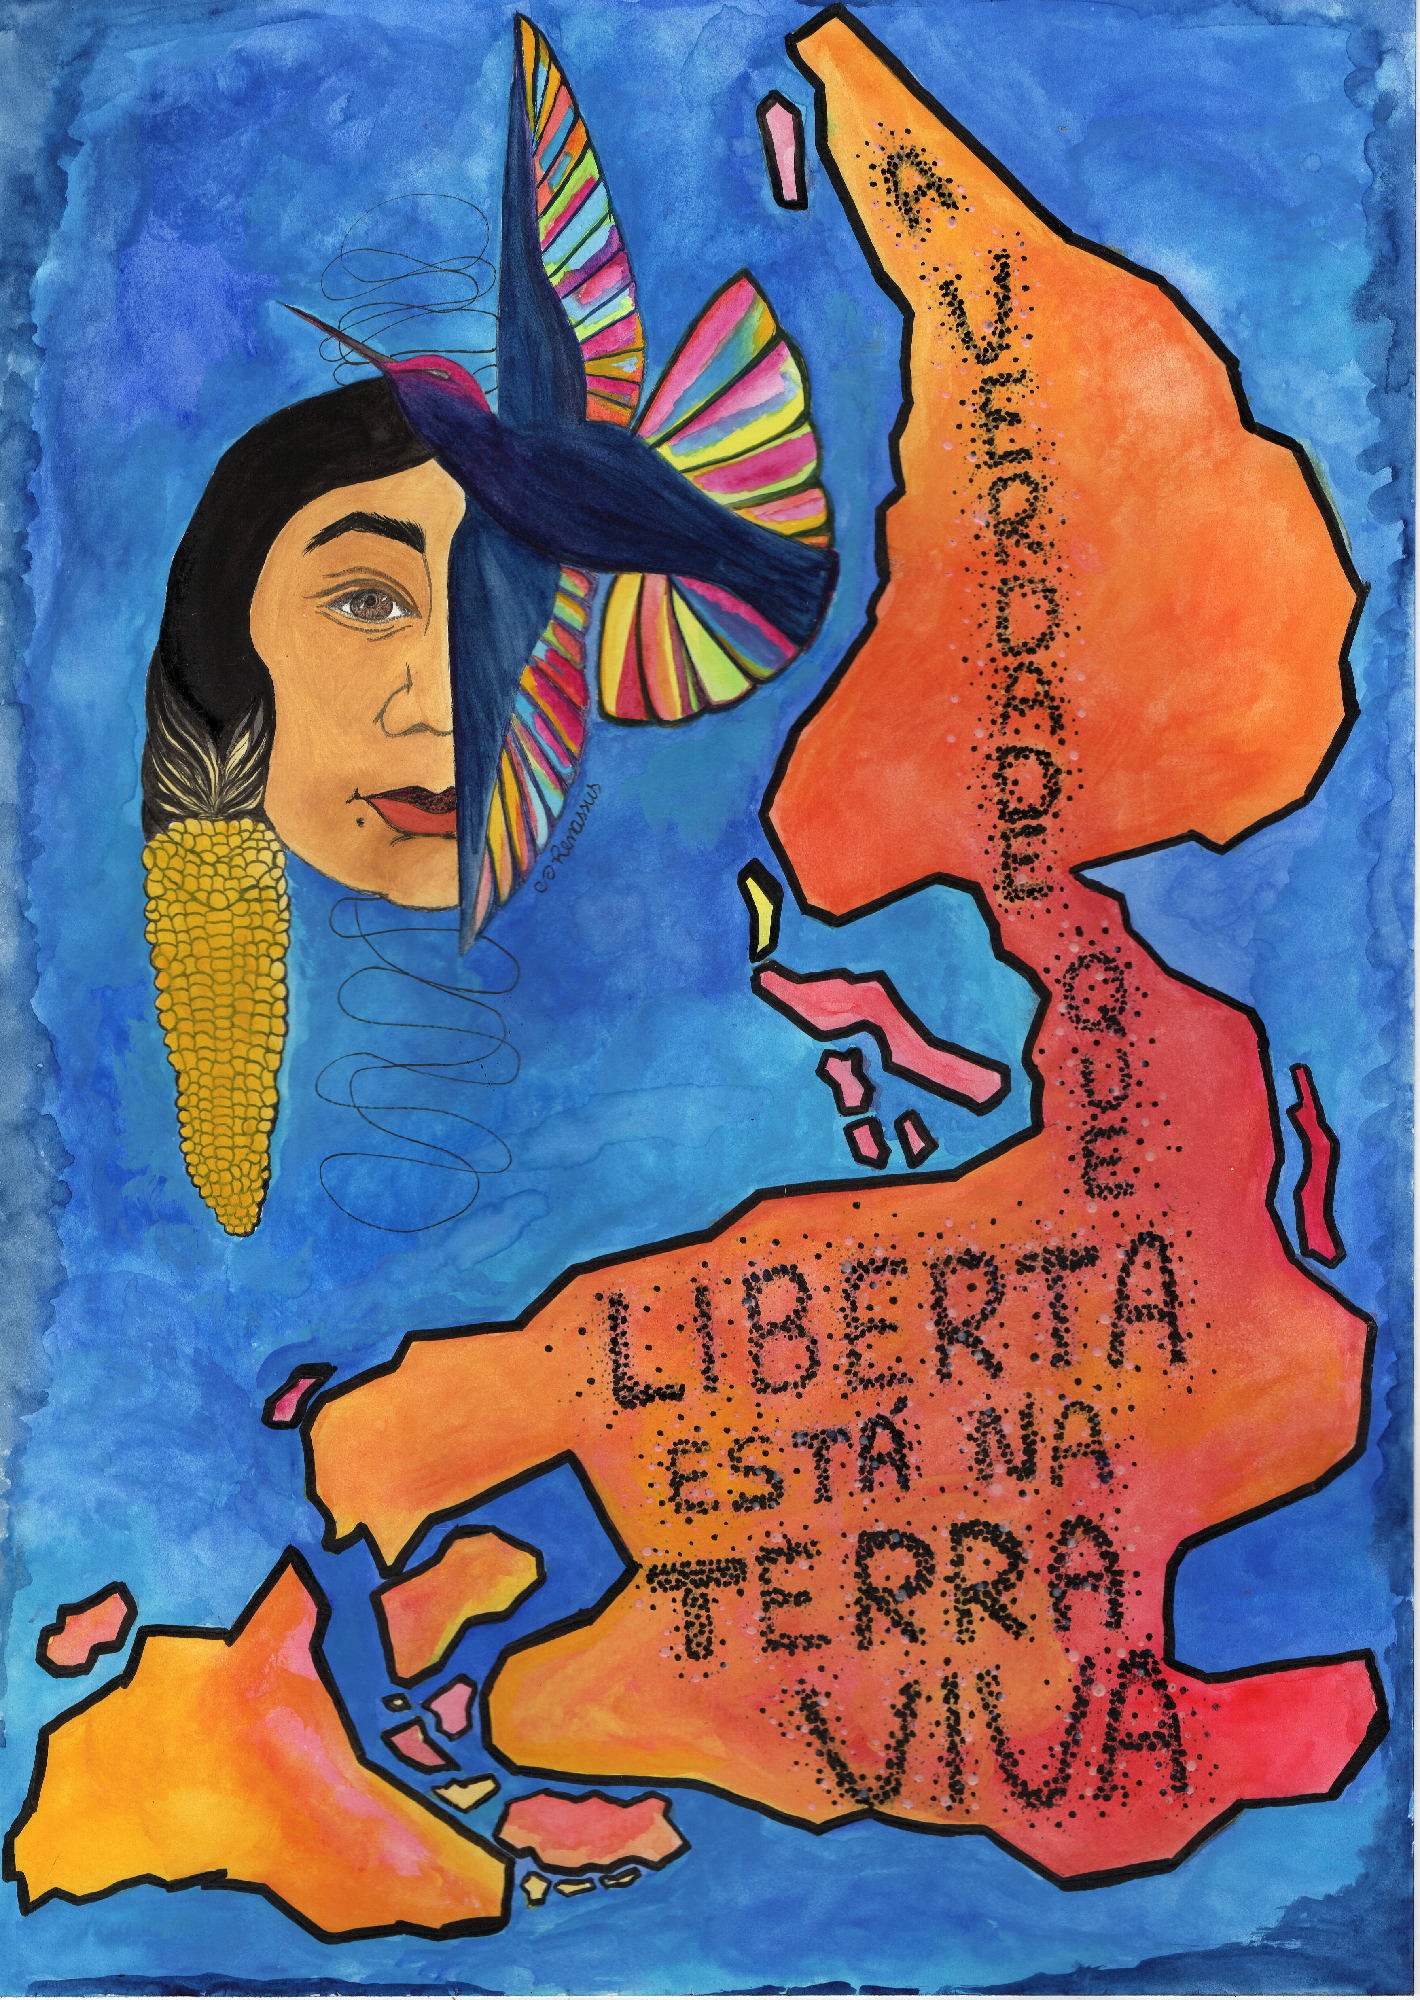 Terra viva, Renata Inahuazo, 2021, Aquarela, caneta nankin e tinta de tecido em papel A3